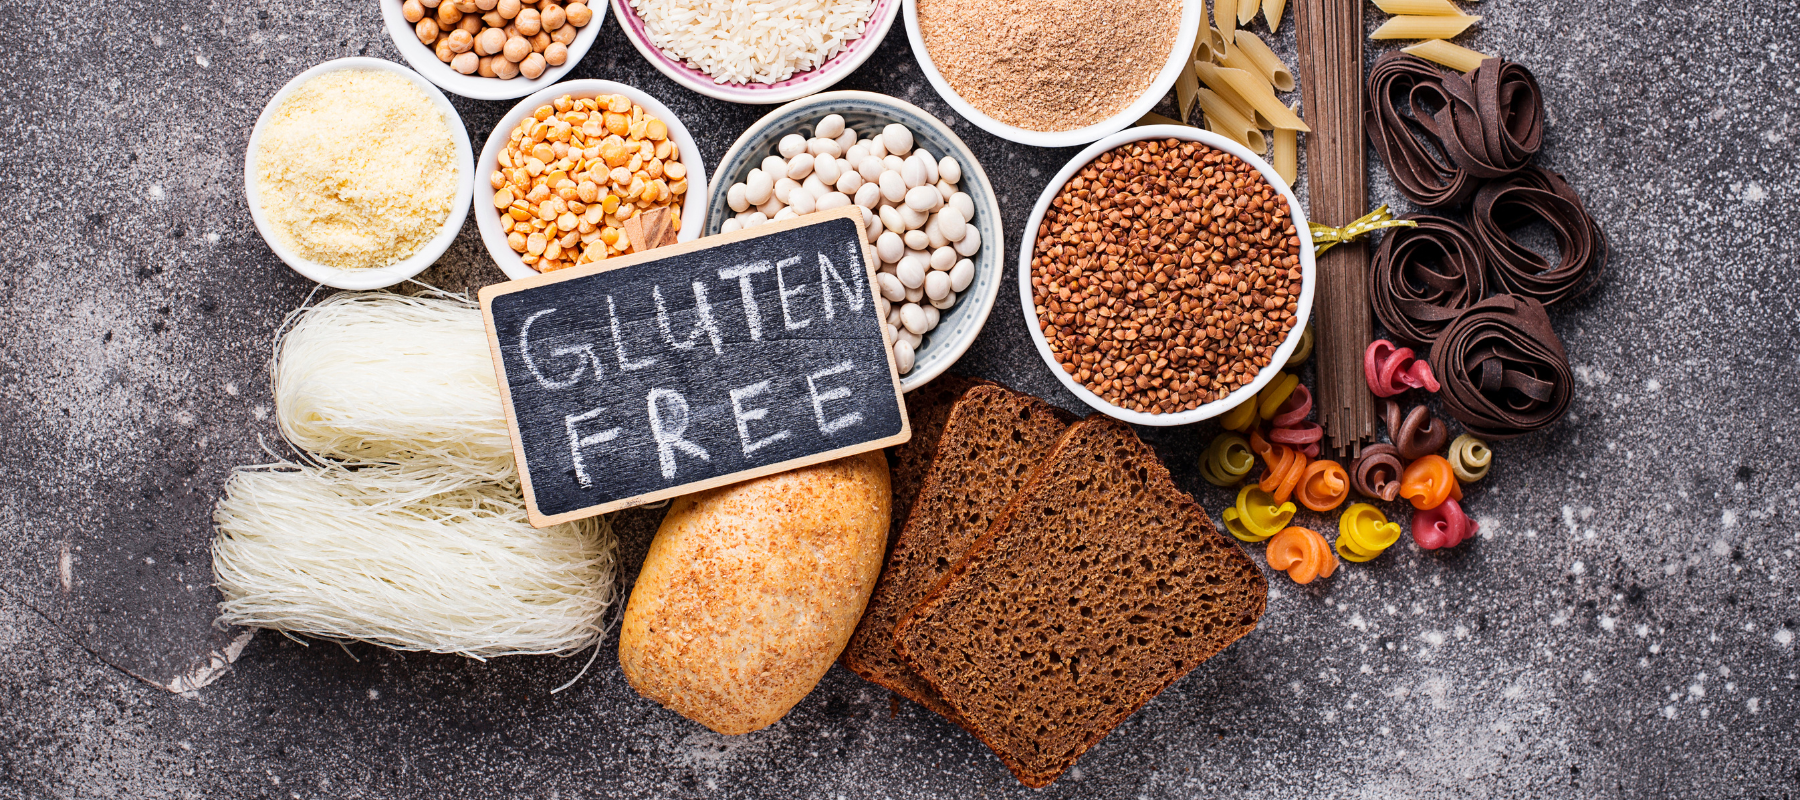 Wie gesund ist eine glutenfreie Ernährung? Leckere glutenfreie Rezepte